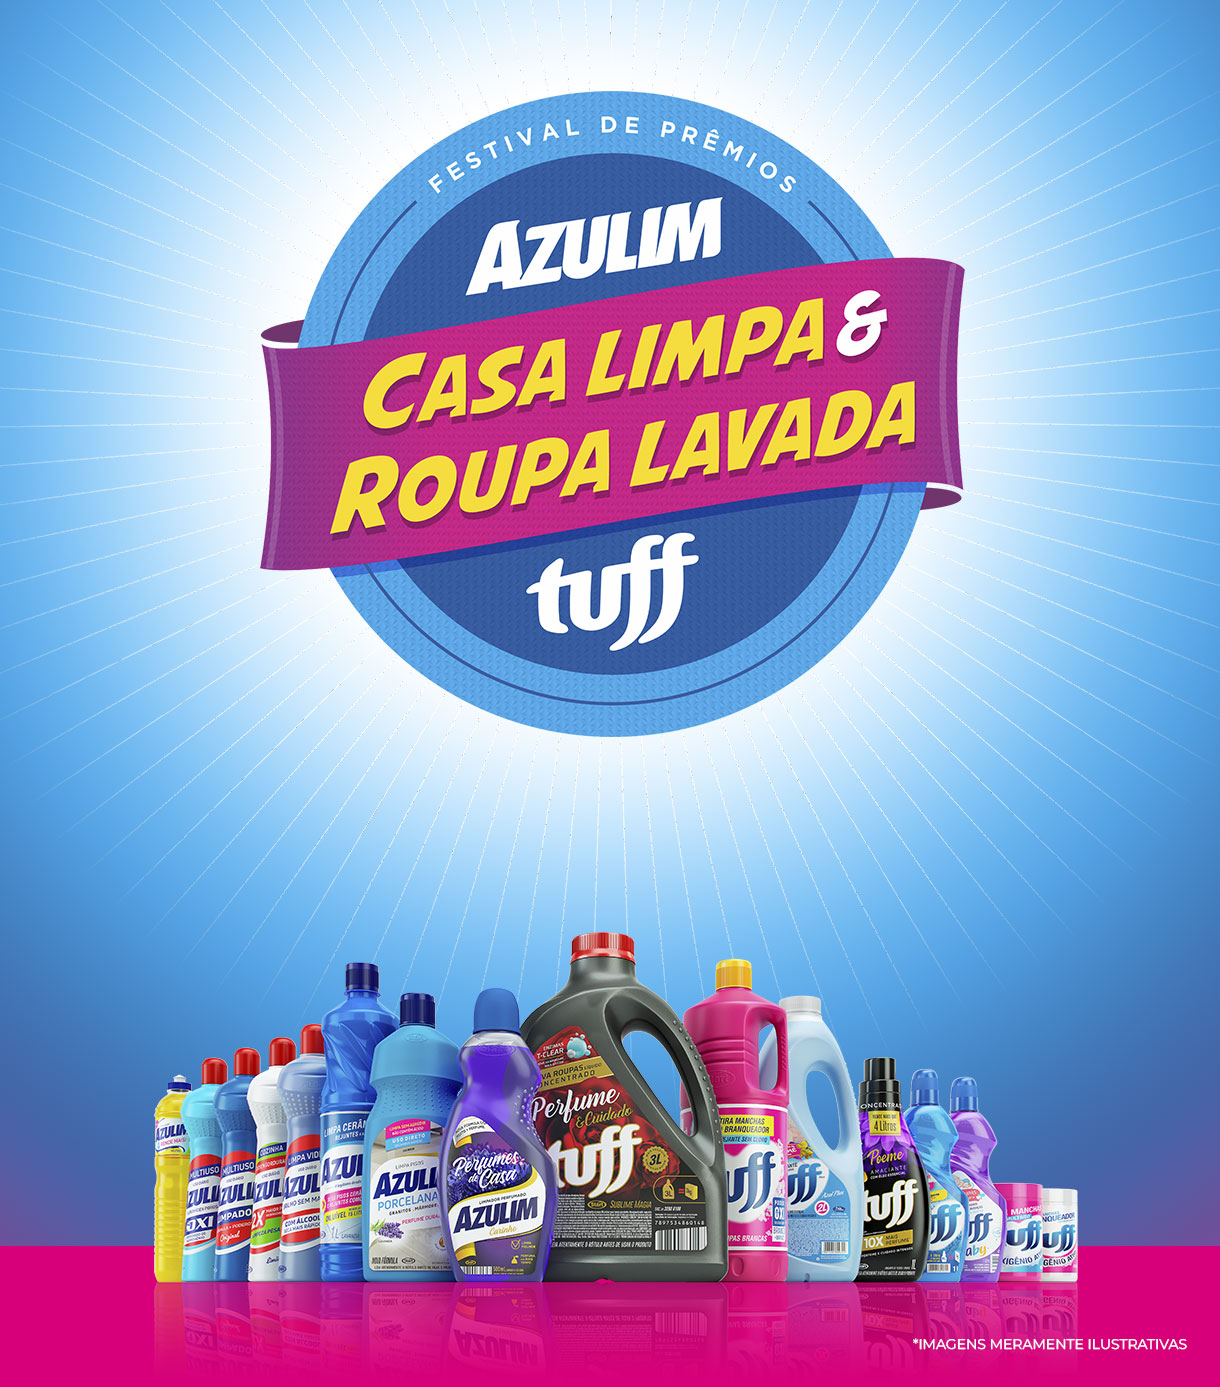 Logotimo promoção Festival de Prêmios Casa Limpa & Roupa Lavada - Azulim e Tuff